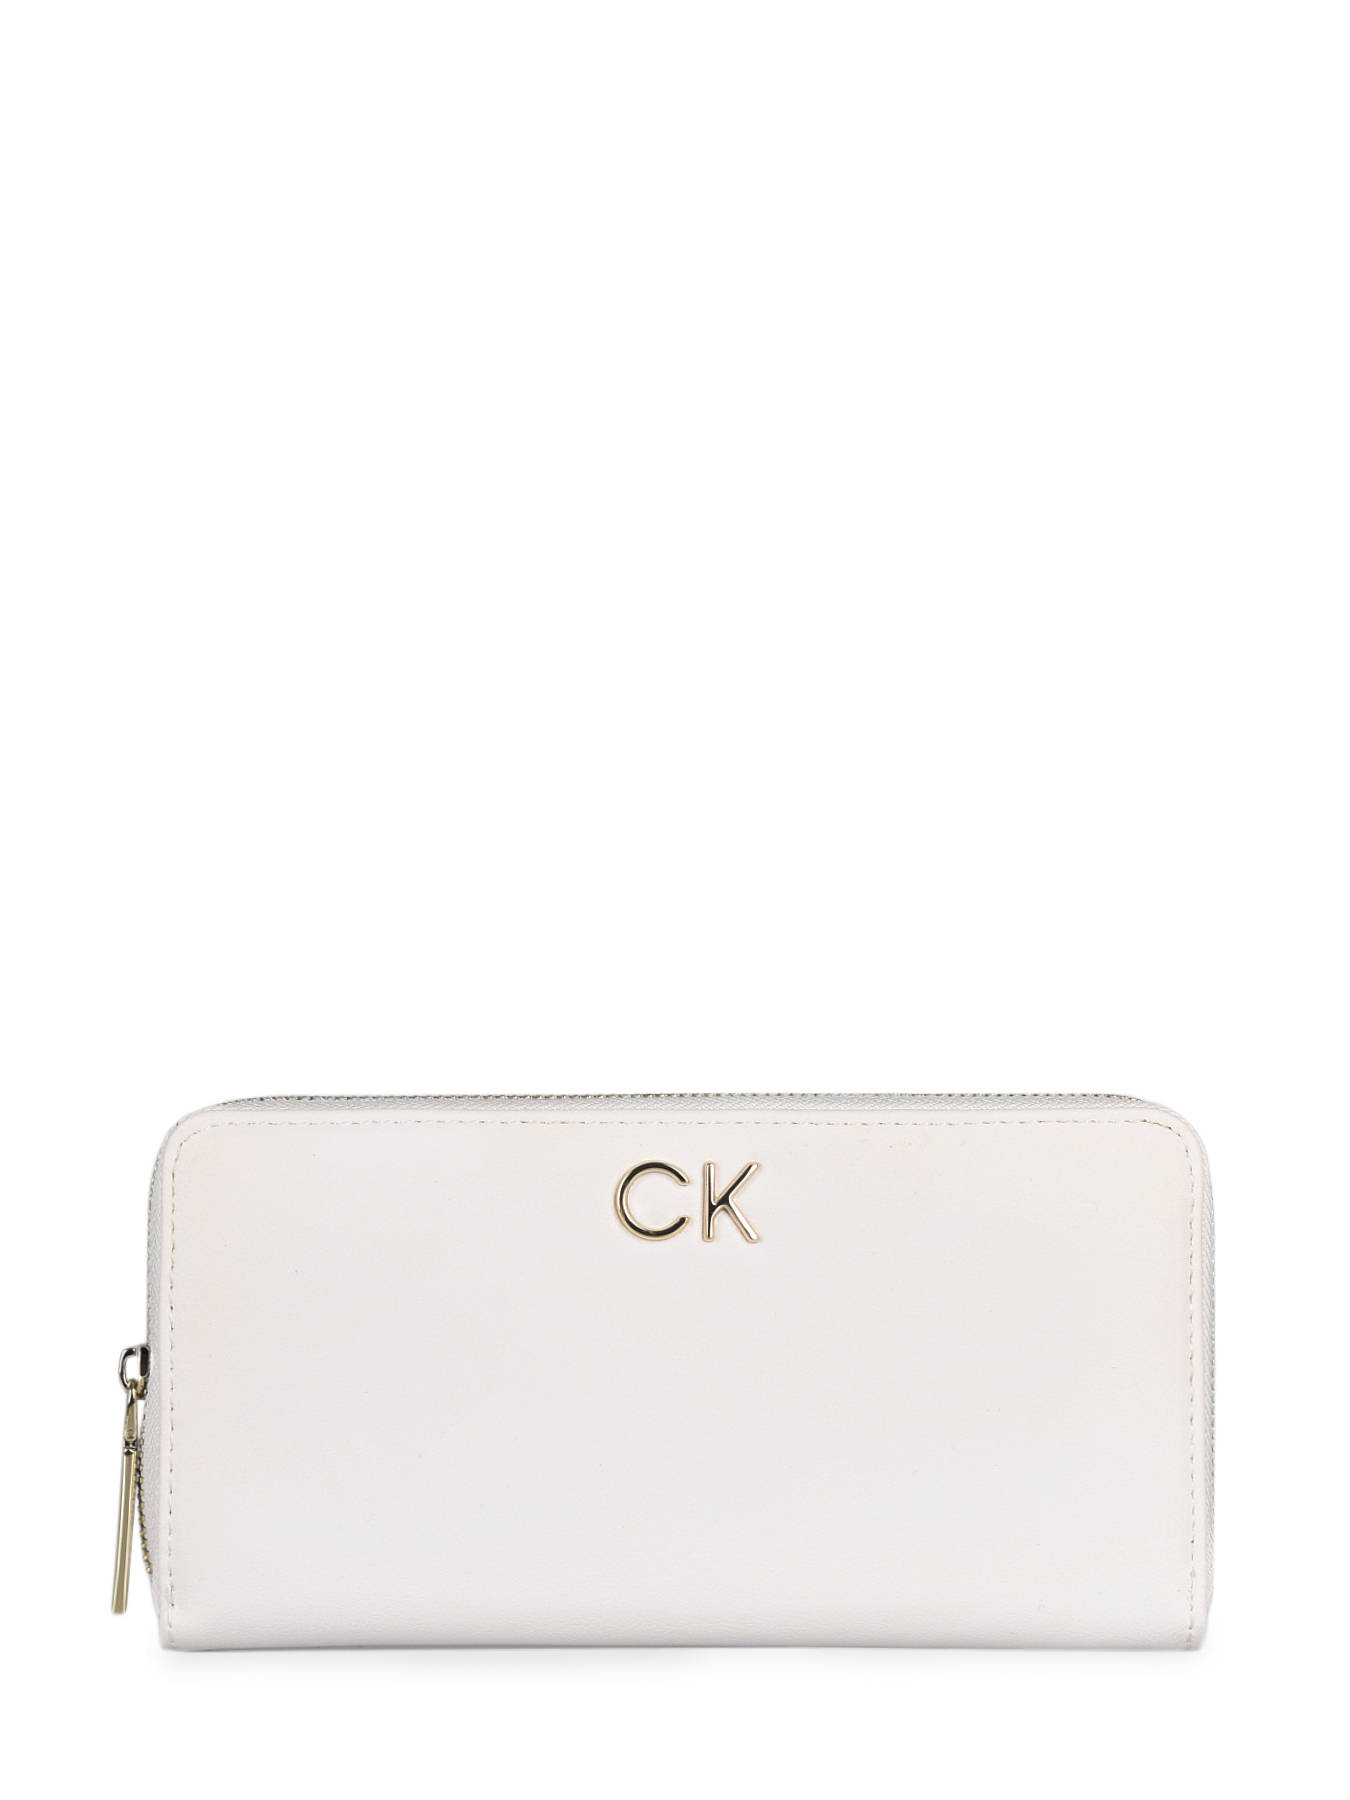 Calvin Klein Jeans Wallet K60K608919 - best prices